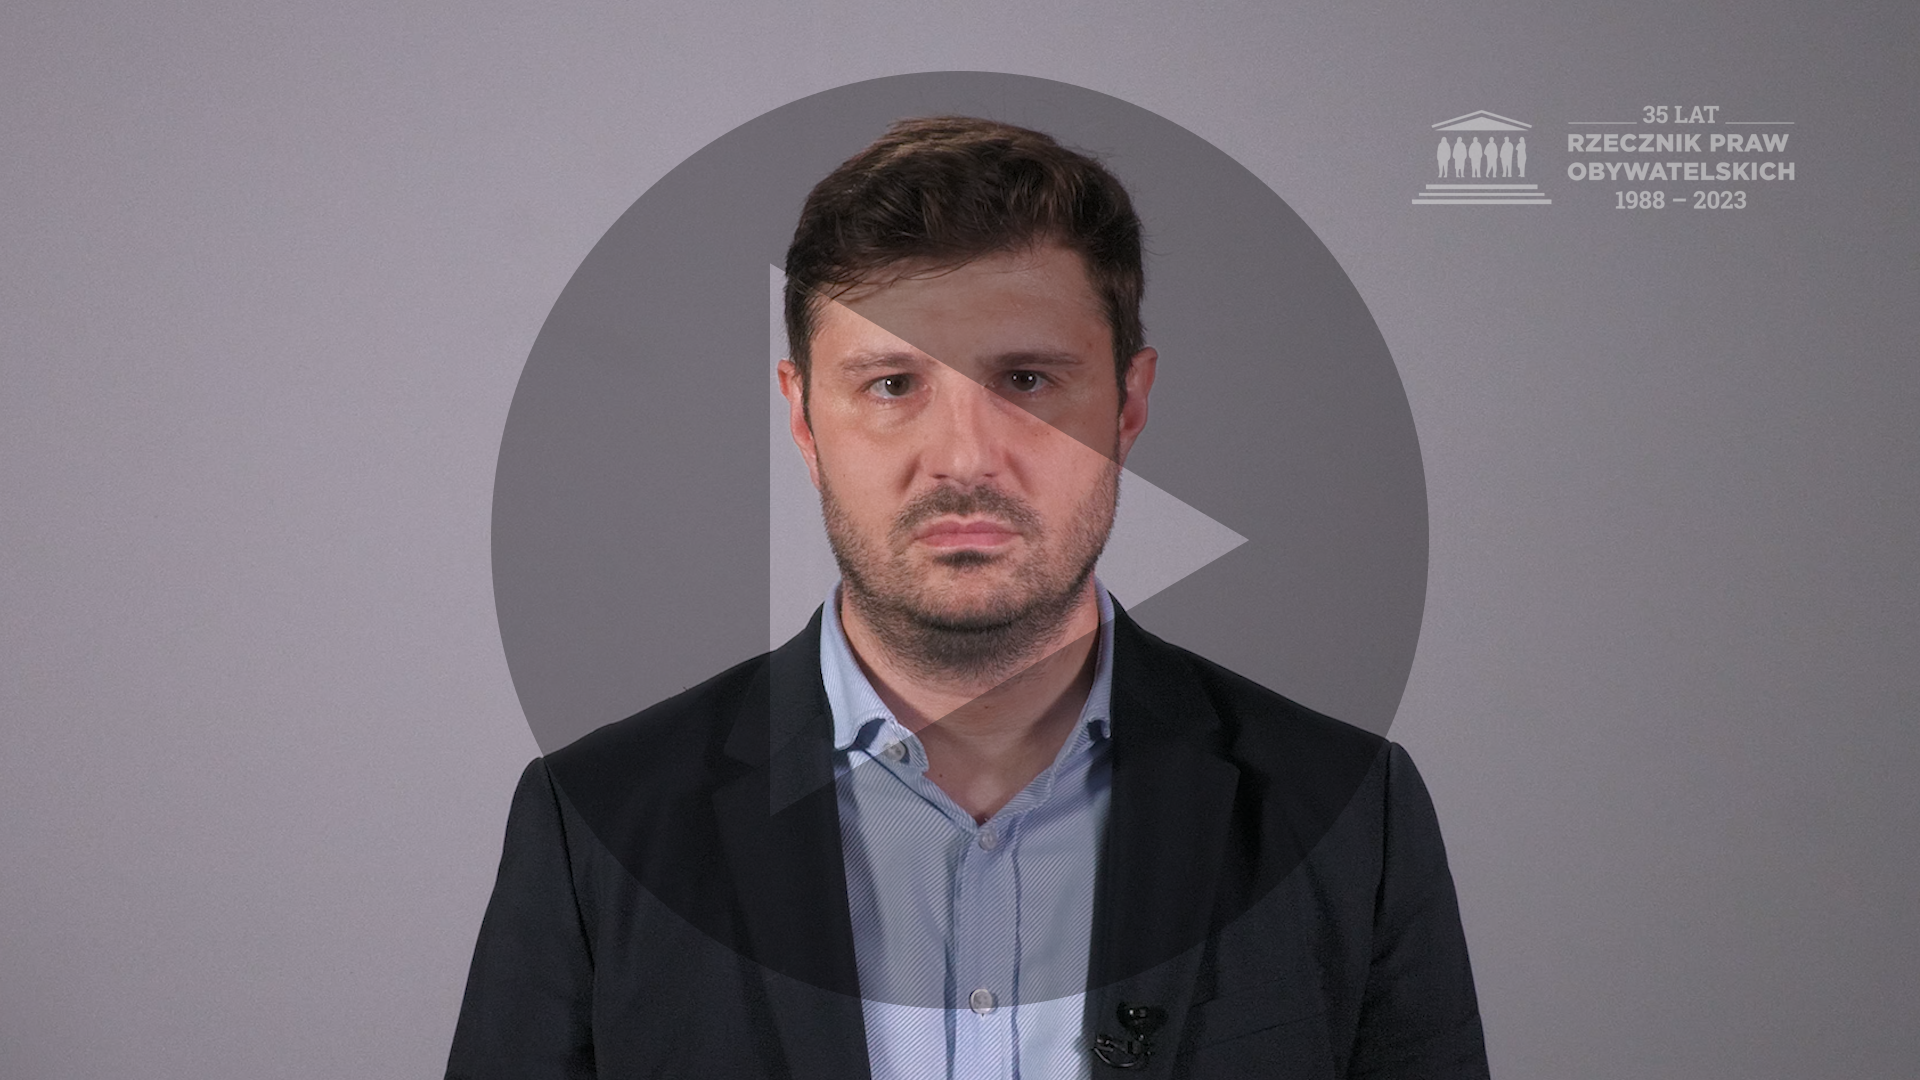 Kadr z nagrania przedstawiający RPO Marcina Wiącka i tłumaczkę polskiego języka migowego z naniesionym symbolem odtwarzania wideo - trójkątem w kole